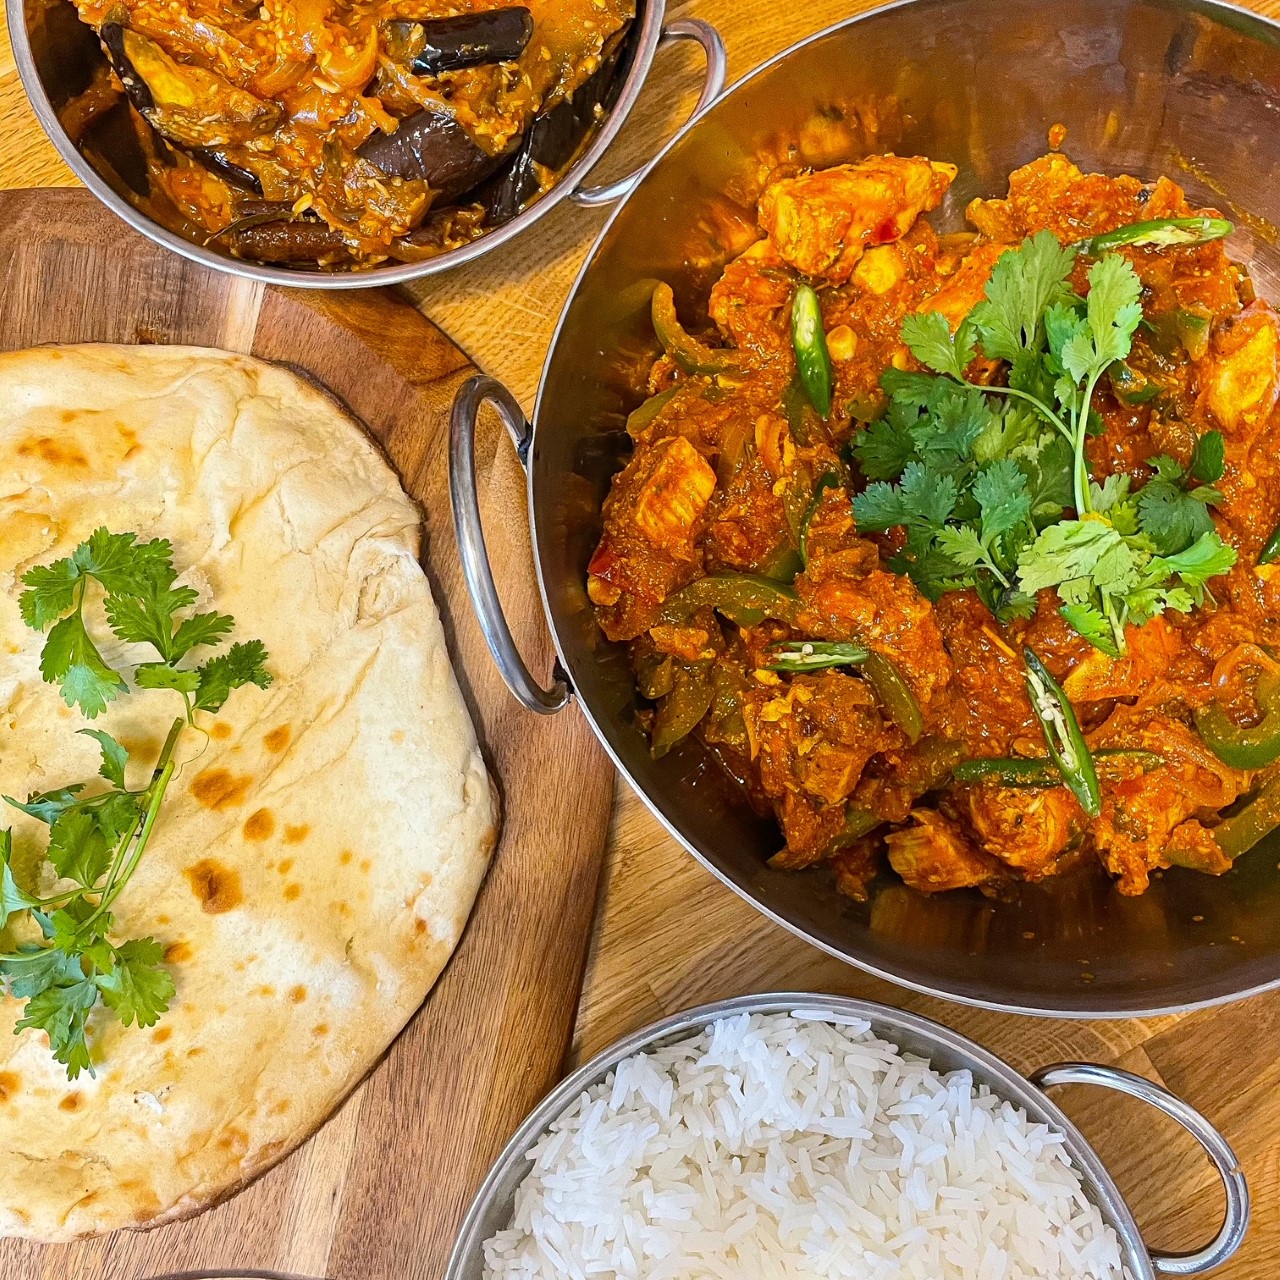 Balti dish, Sizzlers and curry - Picture of Tandoori Masala, Copenhagen -  Tripadvisor